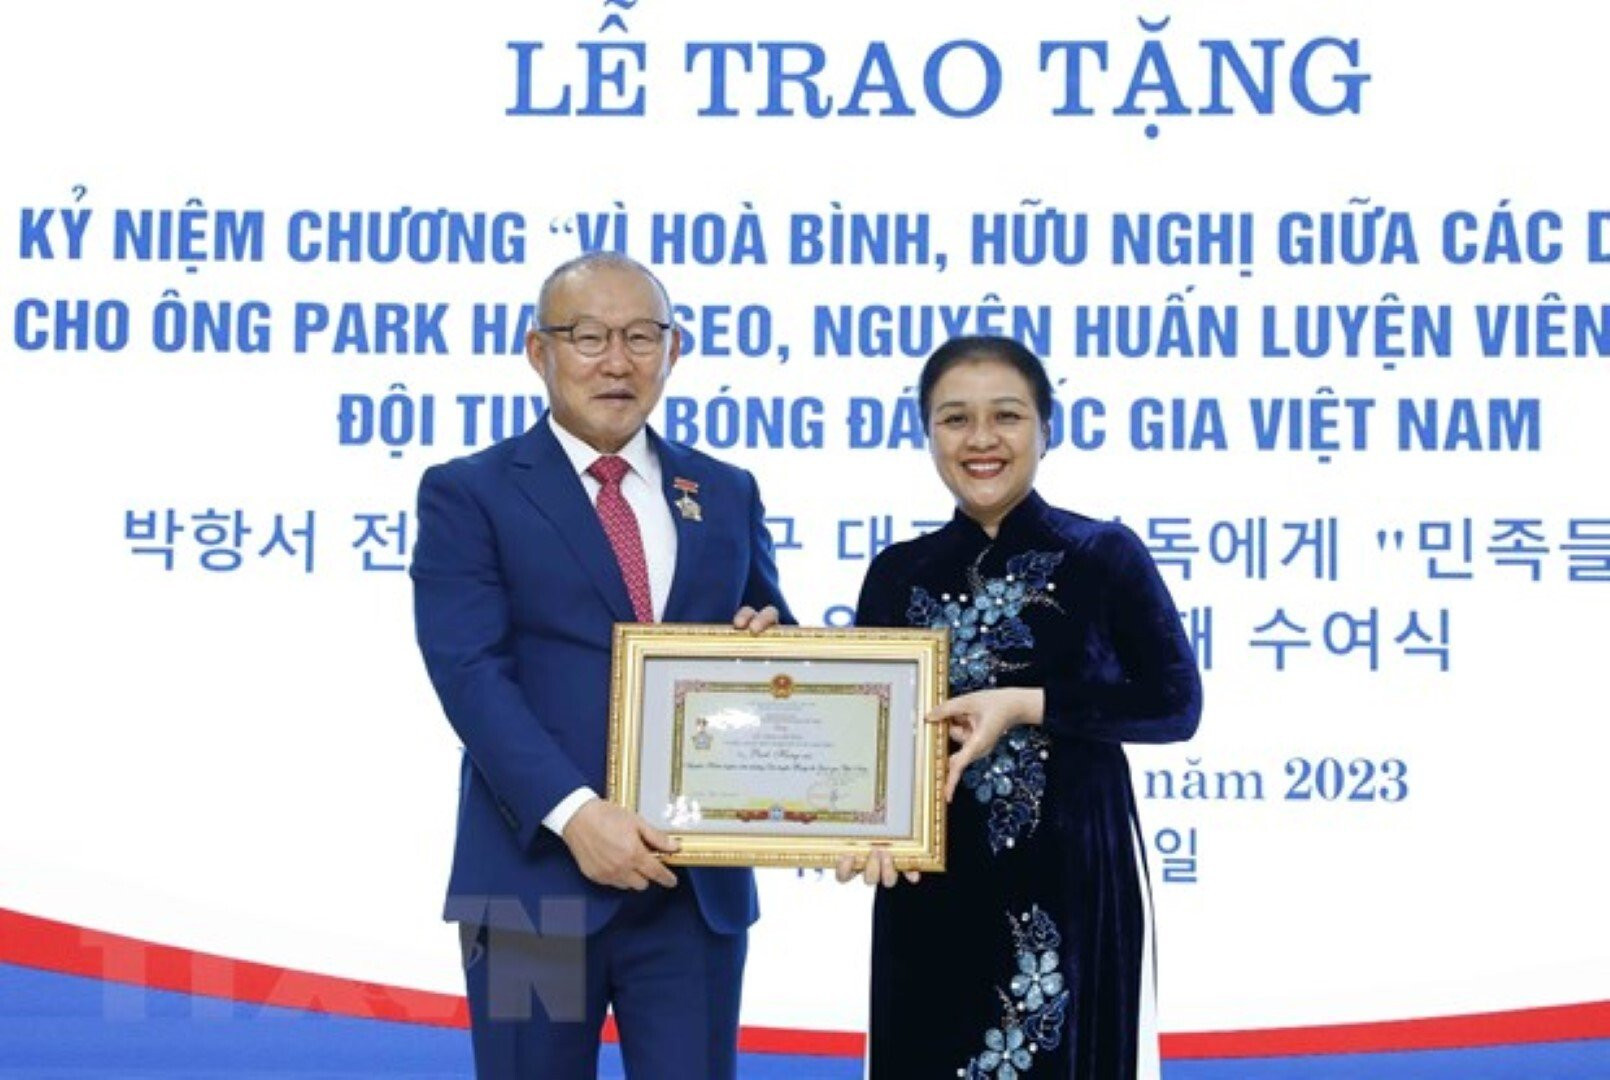 Ông Park Hang Seo nhận Kỷ niệm chương vì hòa bình giữa các dân tộc - 1